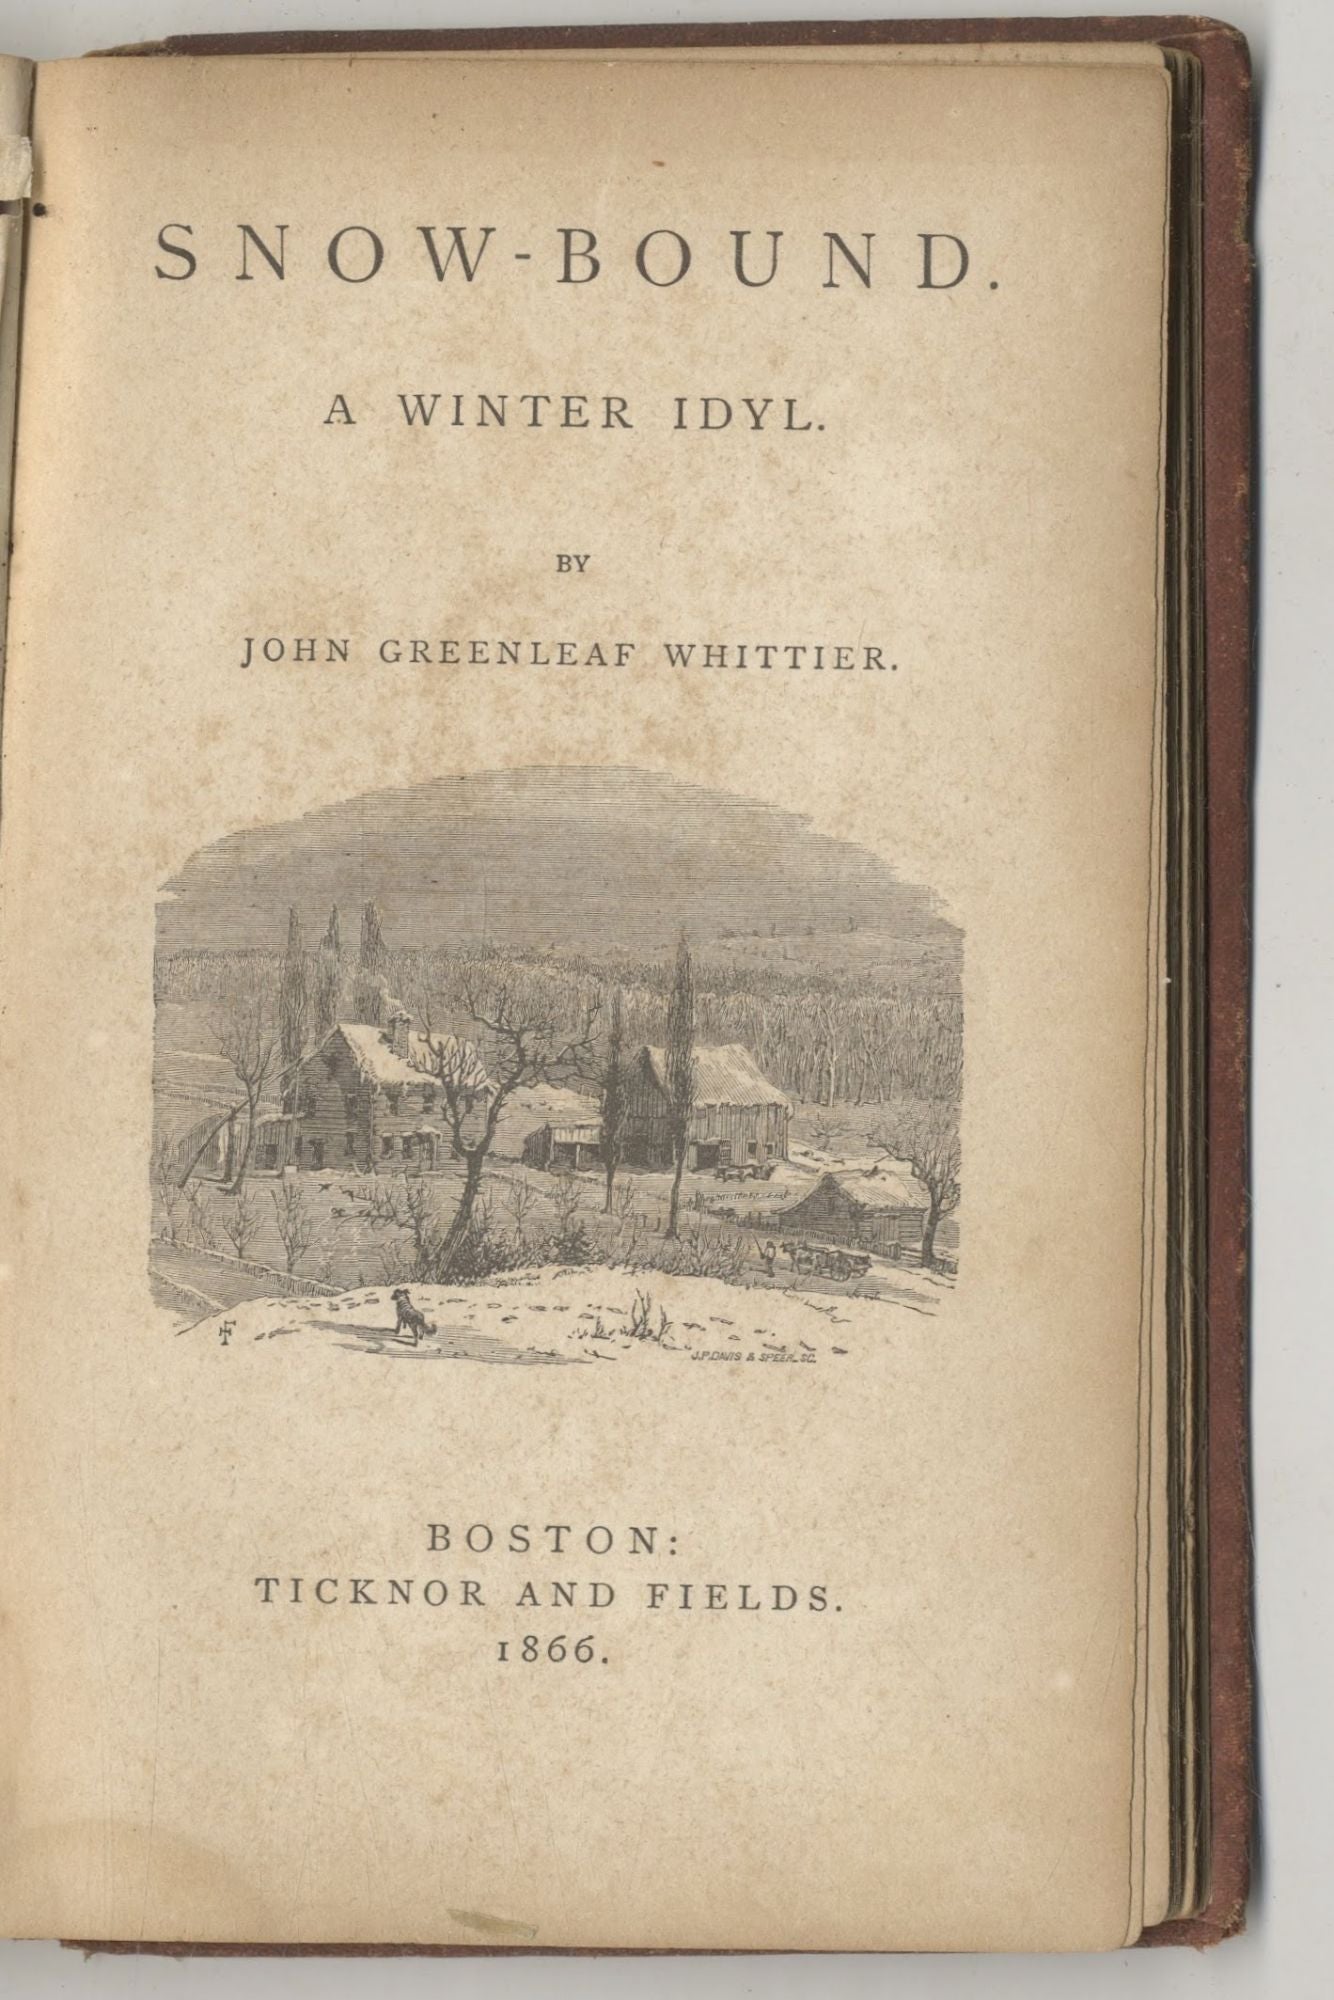 Book #27440 Snowbound, A Winter Idyl. John Greenleaf Whittier.